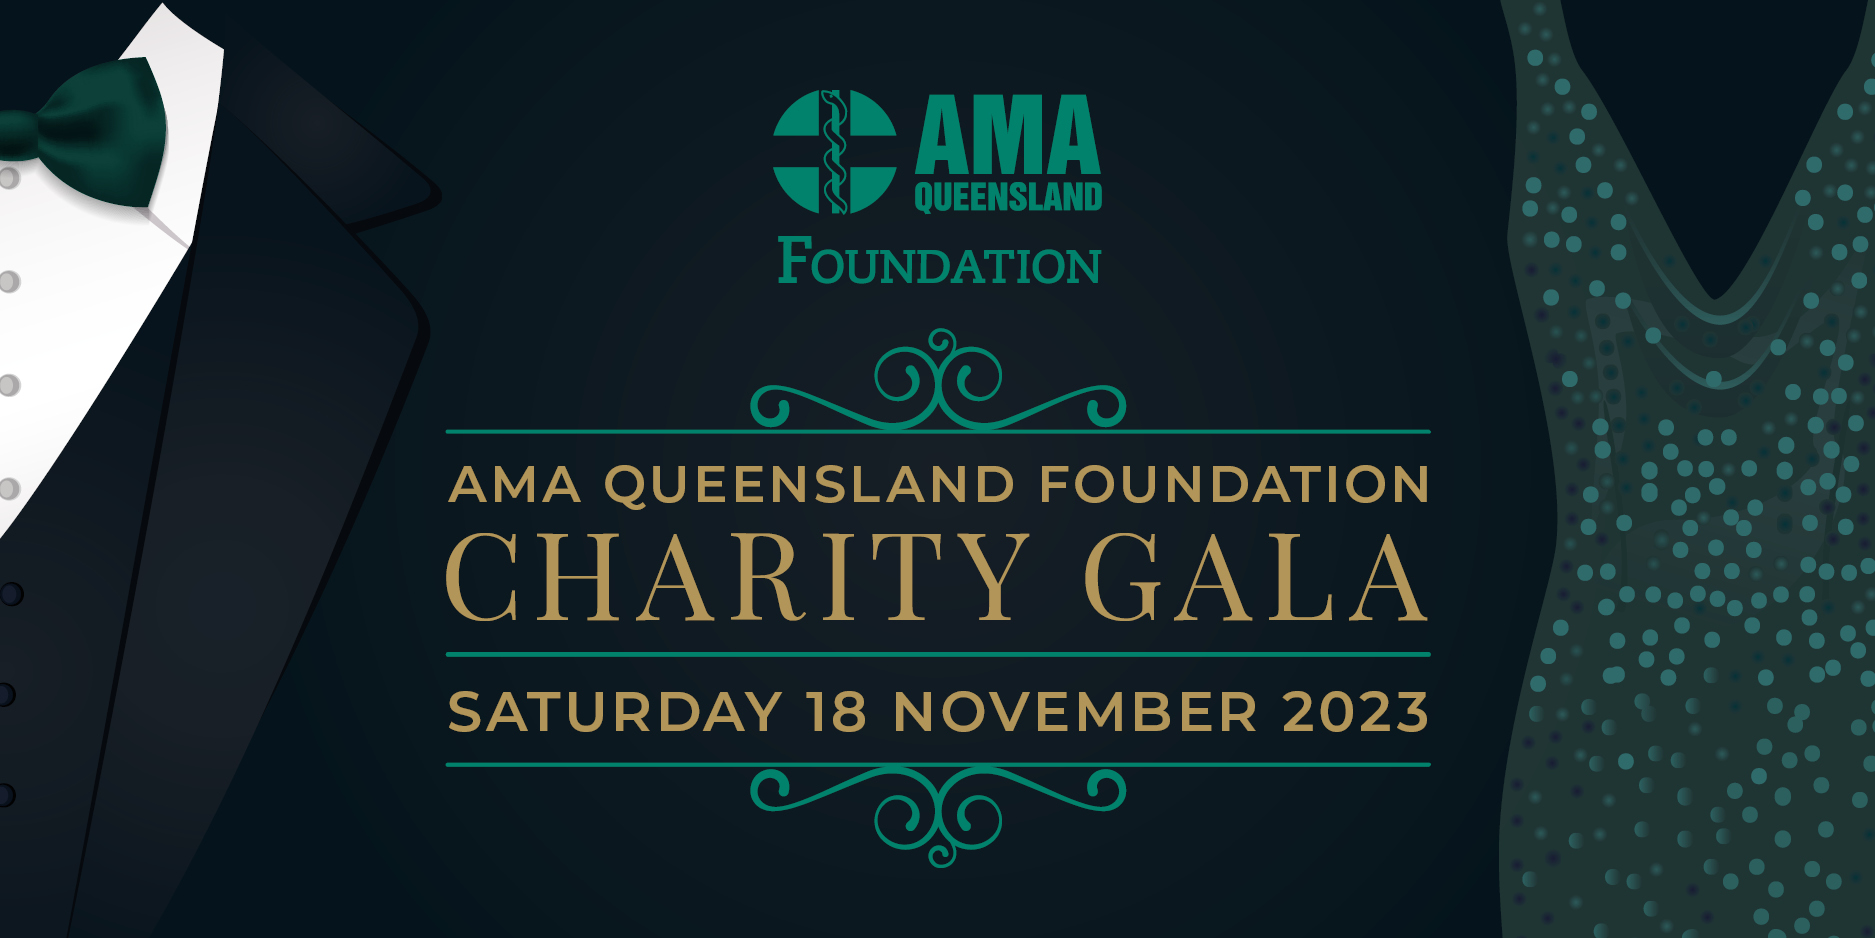 AMA Queensland Foundation Charity Gala